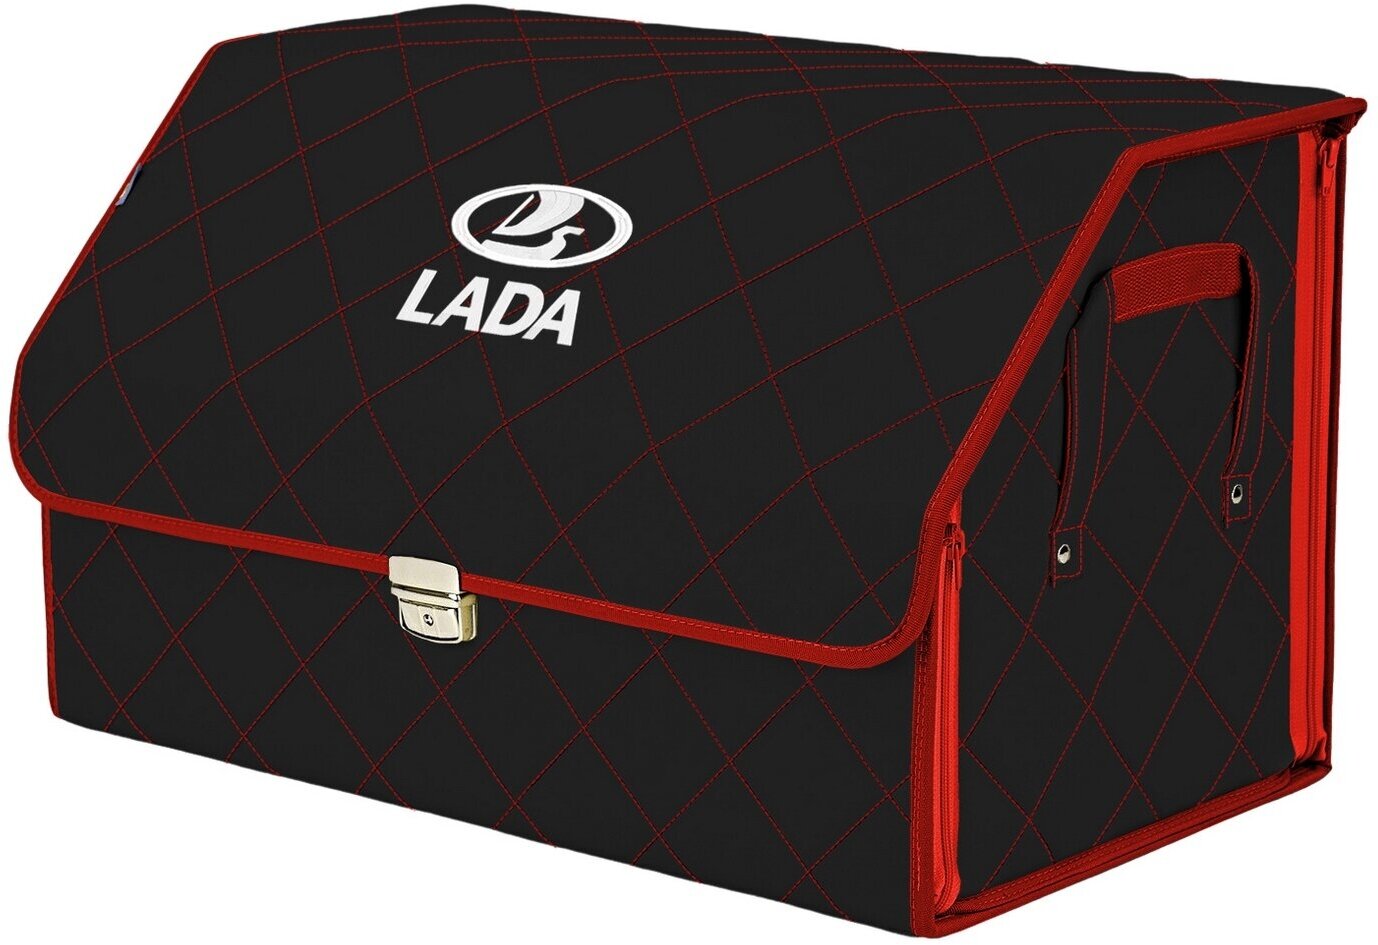 Органайзер-саквояж в багажник "Союз Премиум" (размер XL). Цвет: черный с красной прострочкой Ромб и вышивкой LADA (лада).